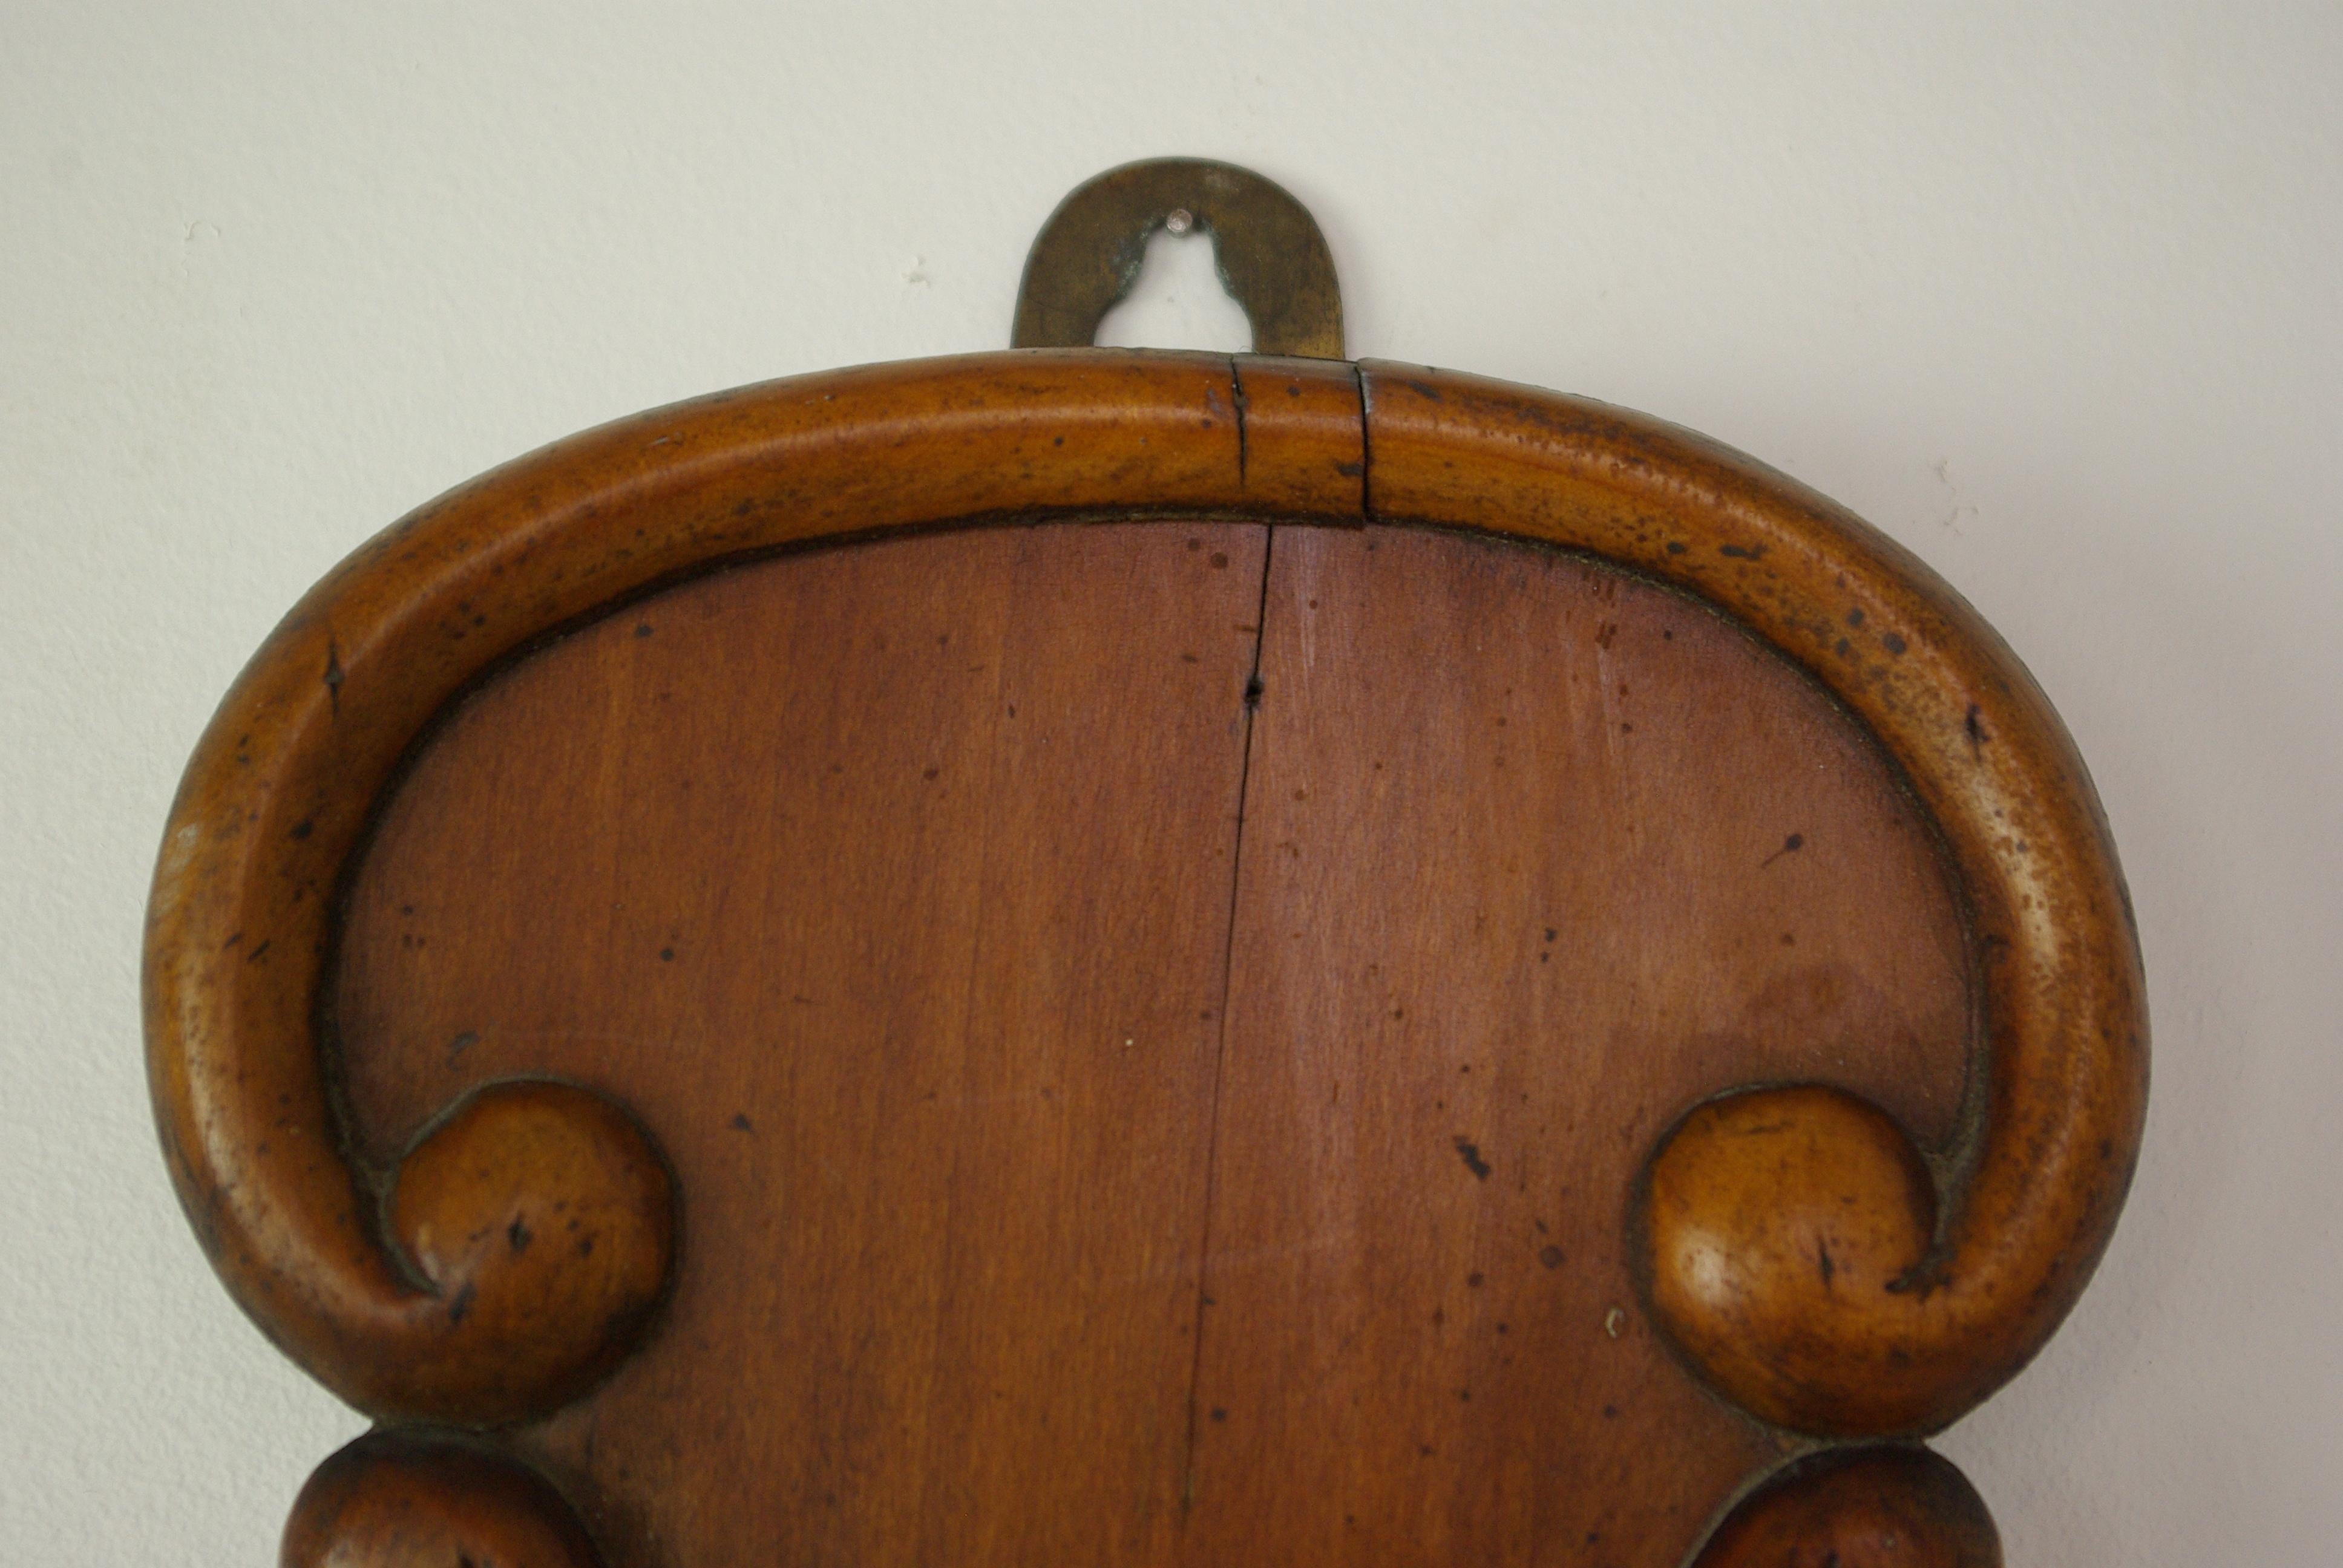 Scottish Antique Barometer, Aneroid Barometer, Decorative Barometer, Carved Walnut, B1282